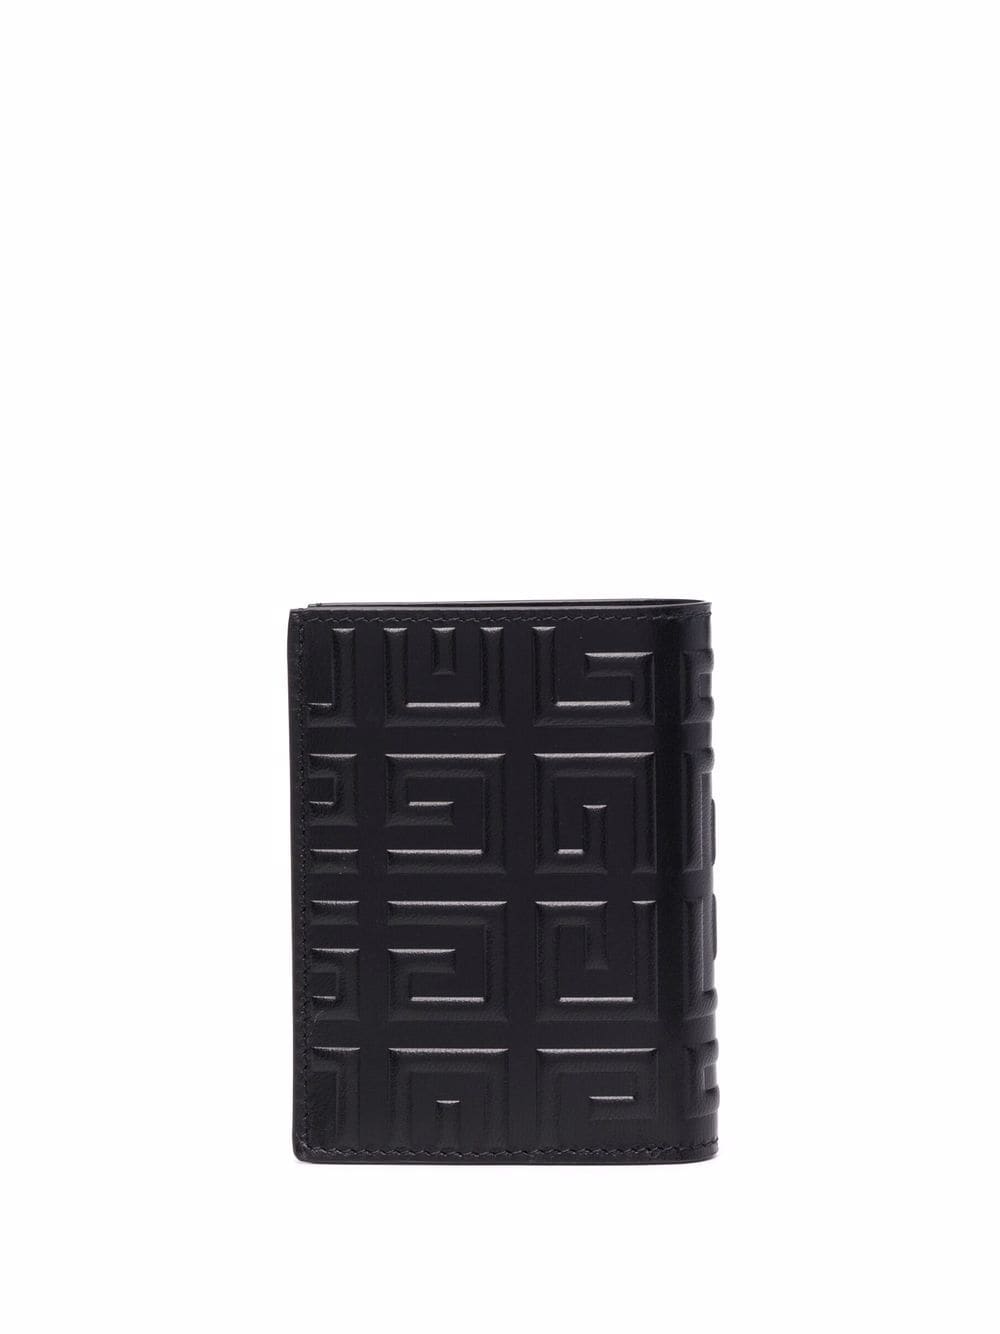 фото Givenchy кошелек с тисненым логотипом